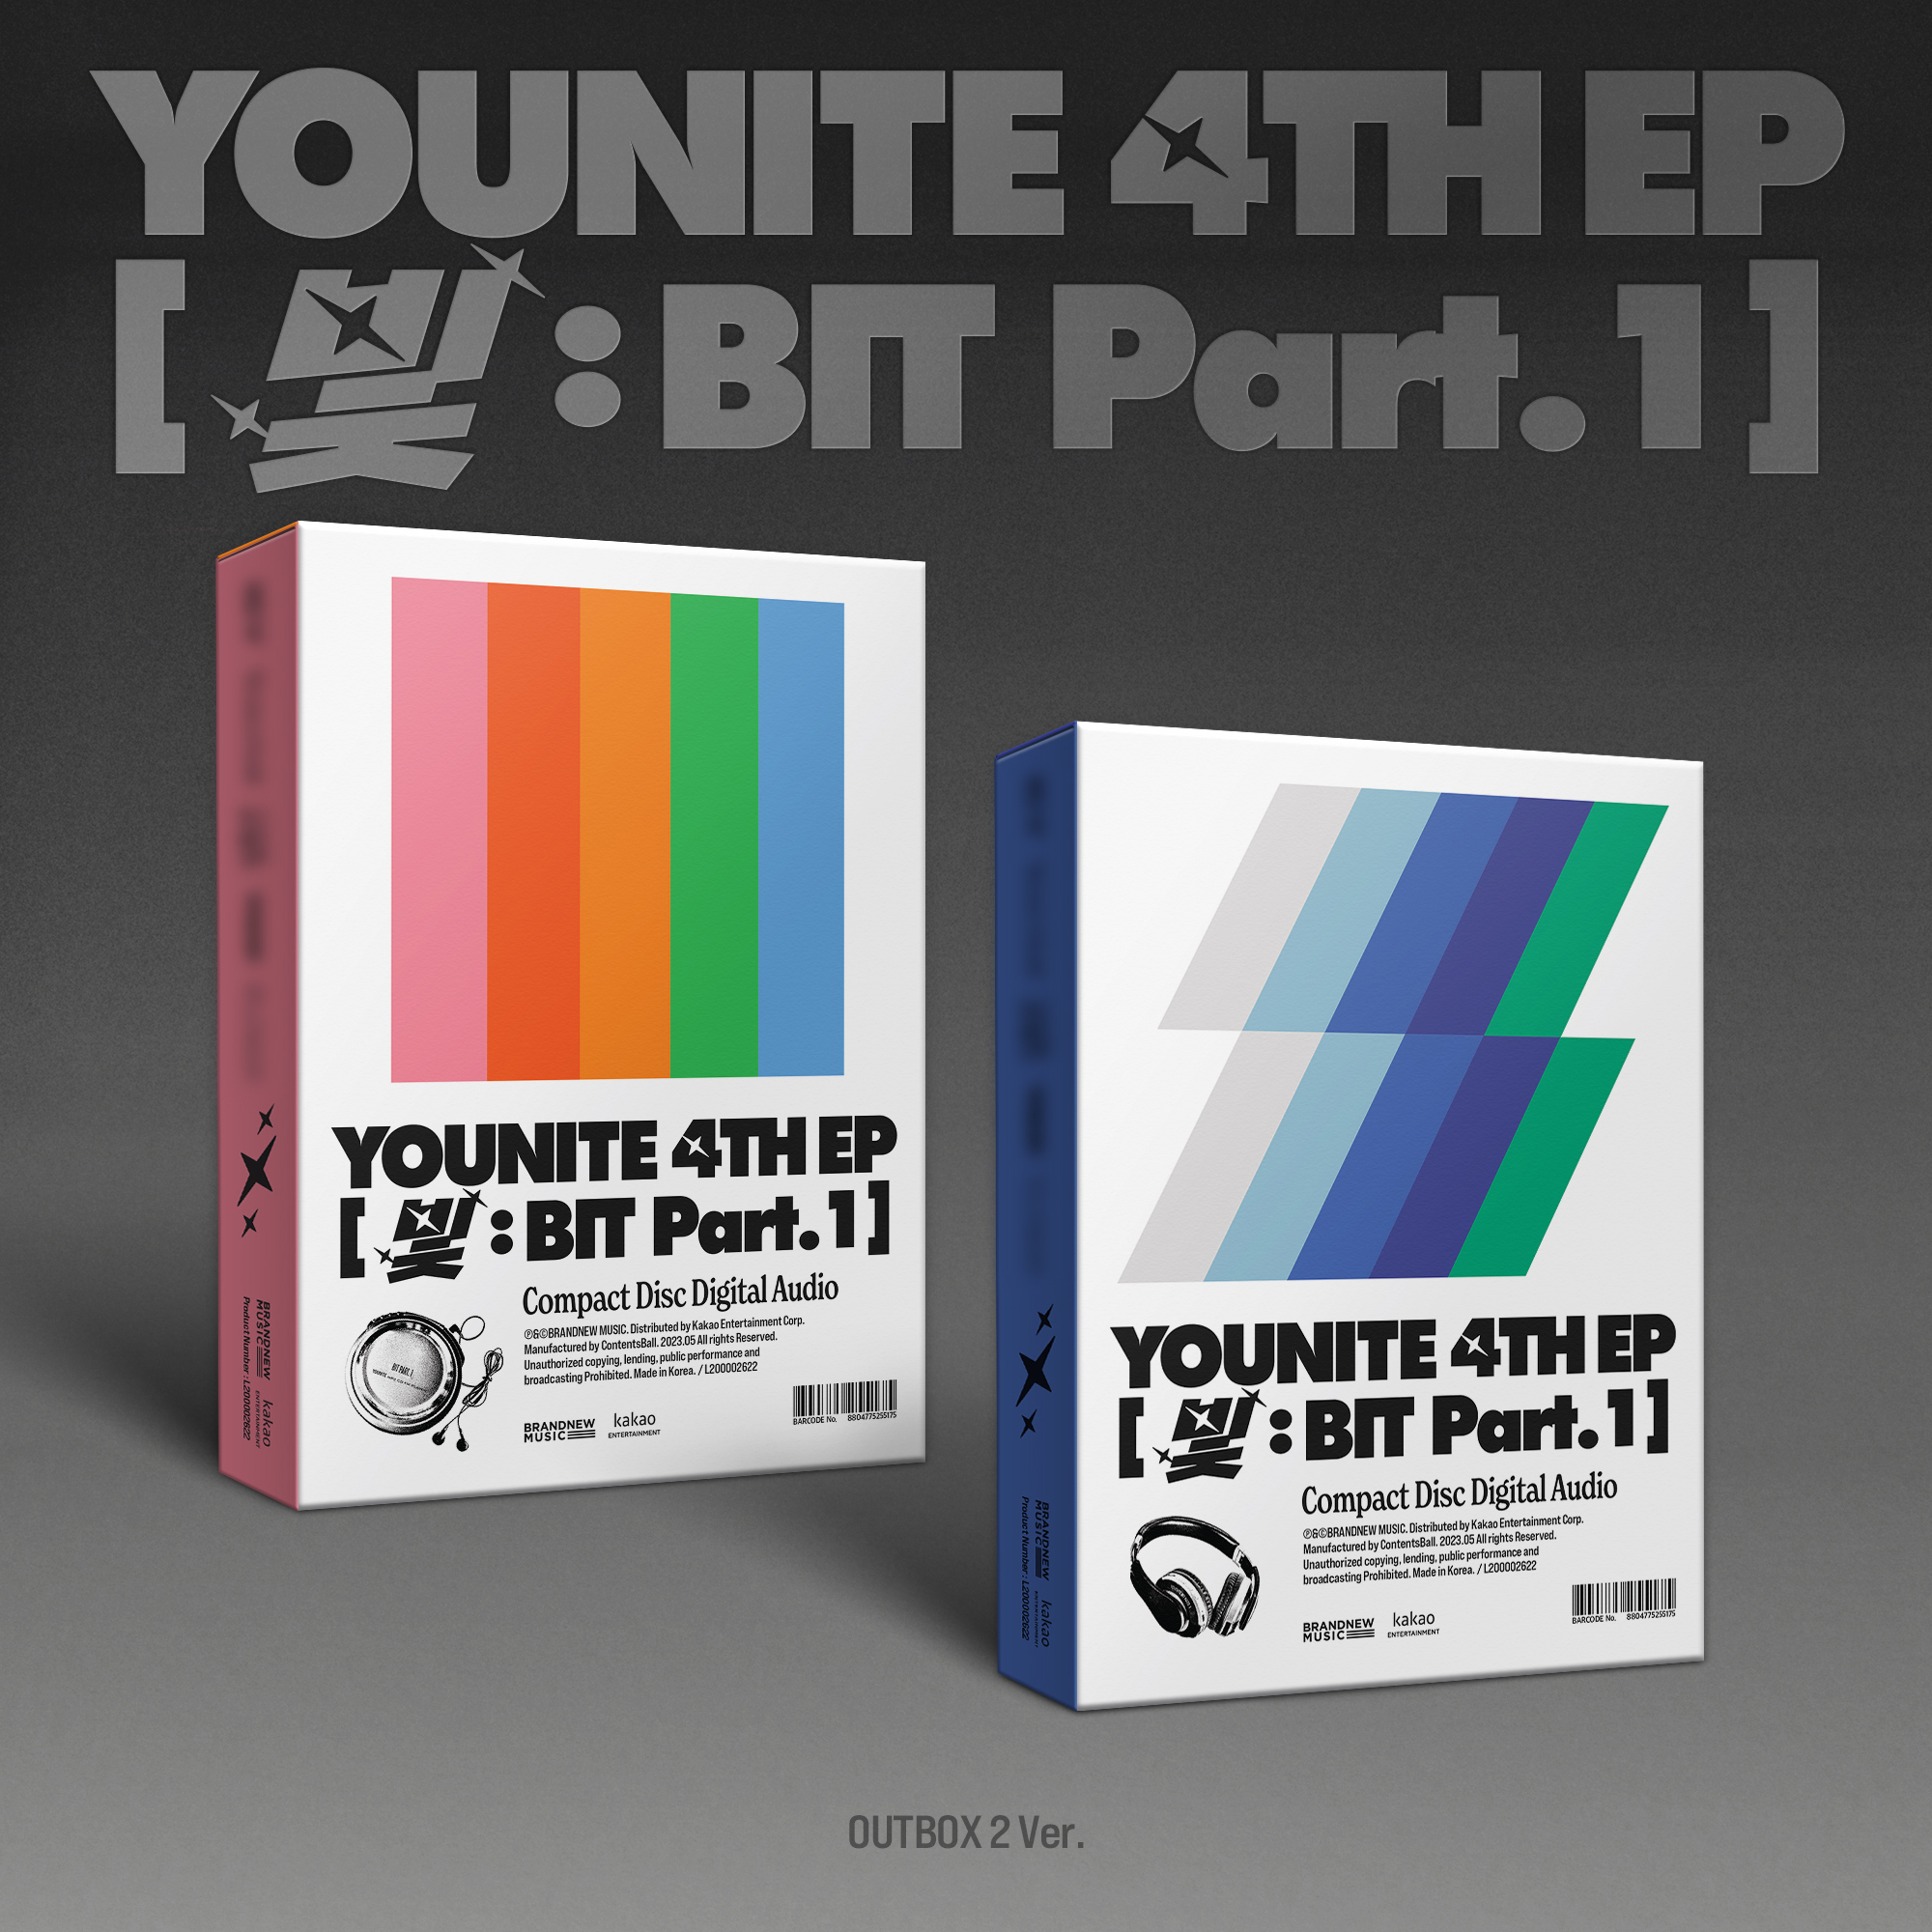 YOUNITE 4TH EP [光 : BIT Part.1] 』オンラインイベント対象商品※2形態ランダム(CDの形態はお選びいただけません。)